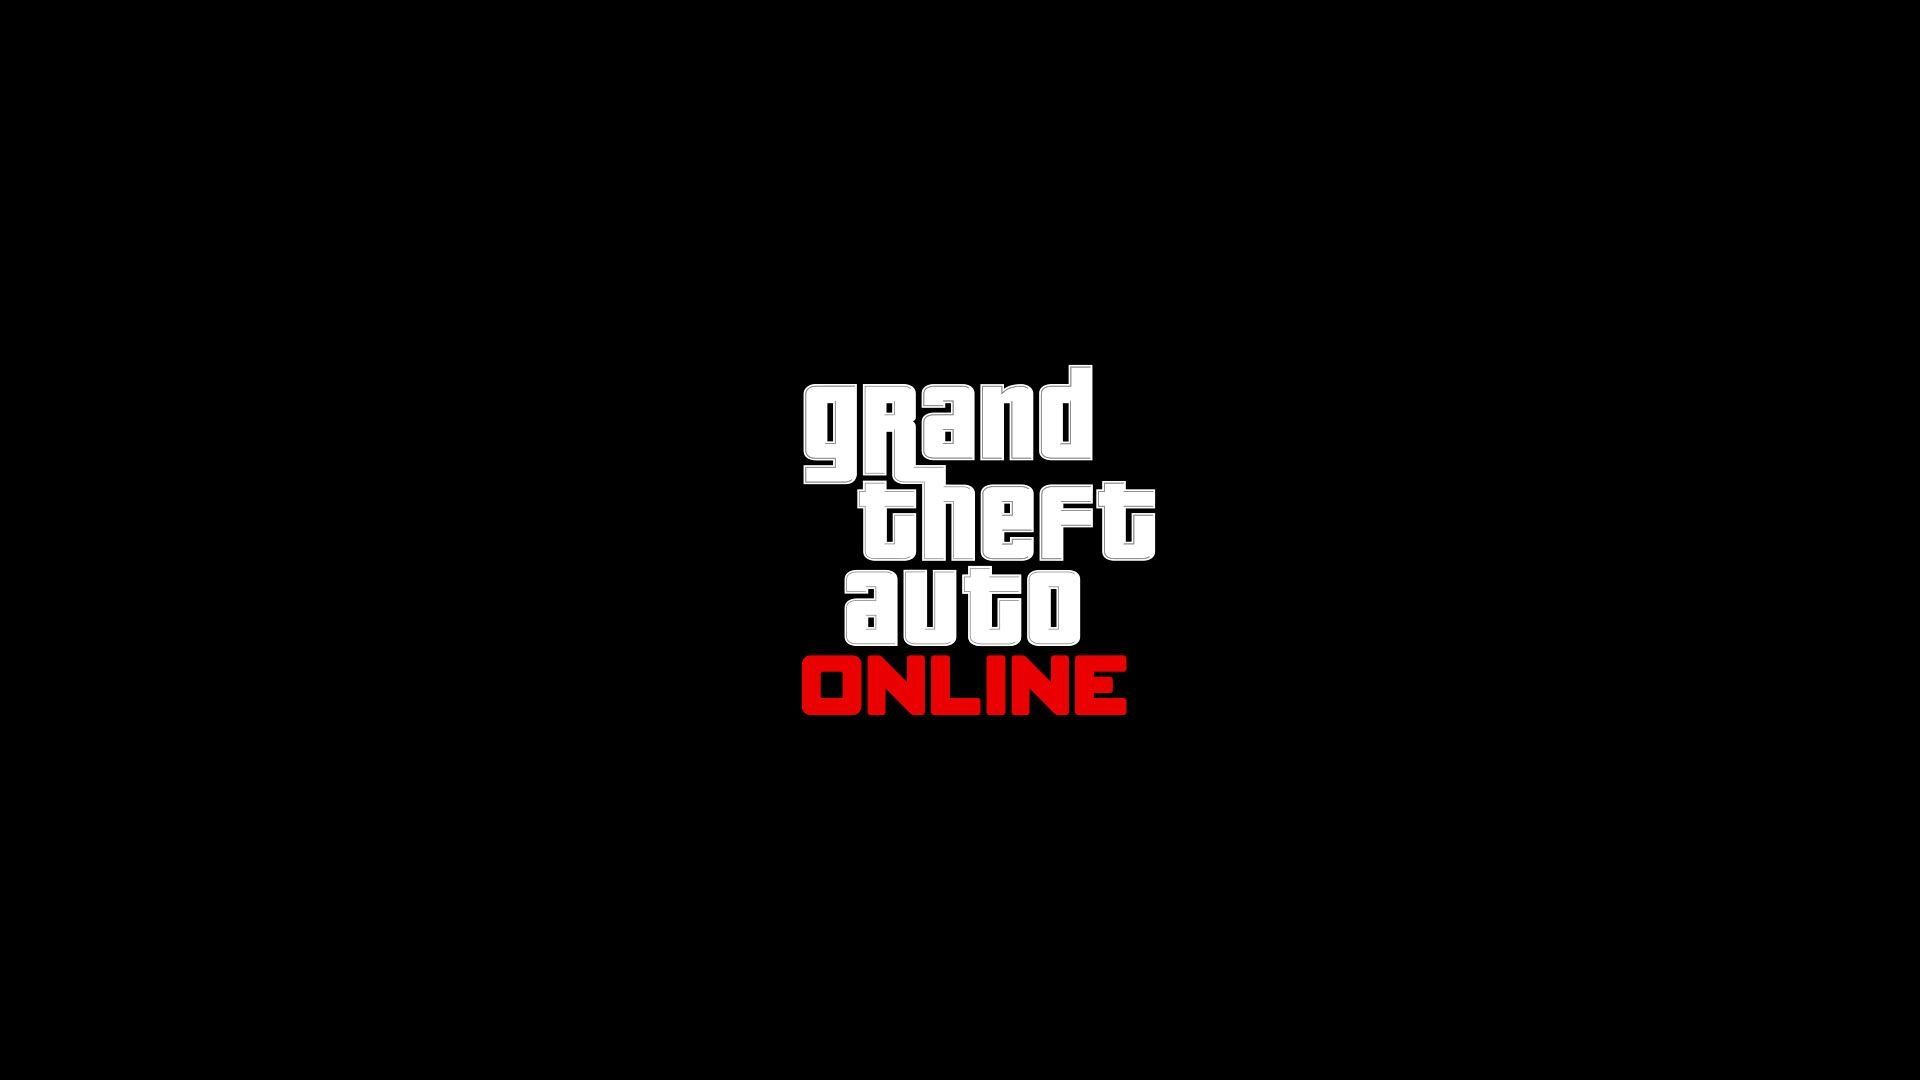 GTA Online ne sera plus disponible sur PlayStation 3 et Xbox 360 à partir du 16 décembre 2021 - Rockstar Games